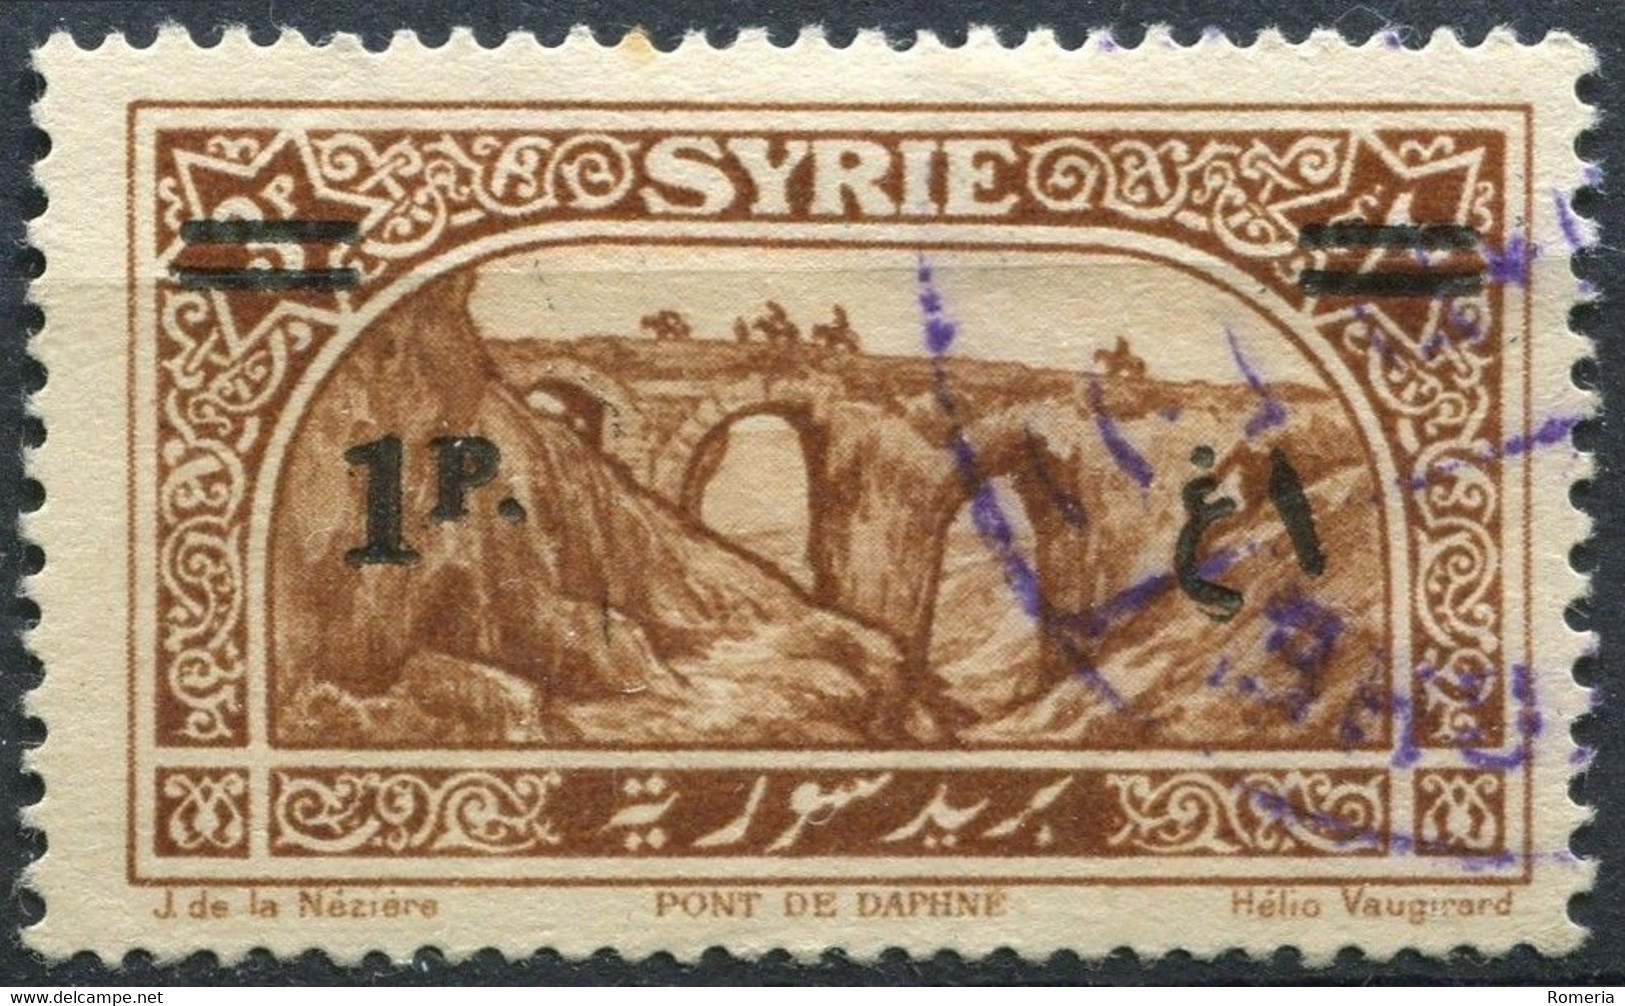 Syrie - 1920 -> 1930 - Lot timbres Syrie (Colonie Française) + 2 timbres République Syrie - obl. - nºs dans description